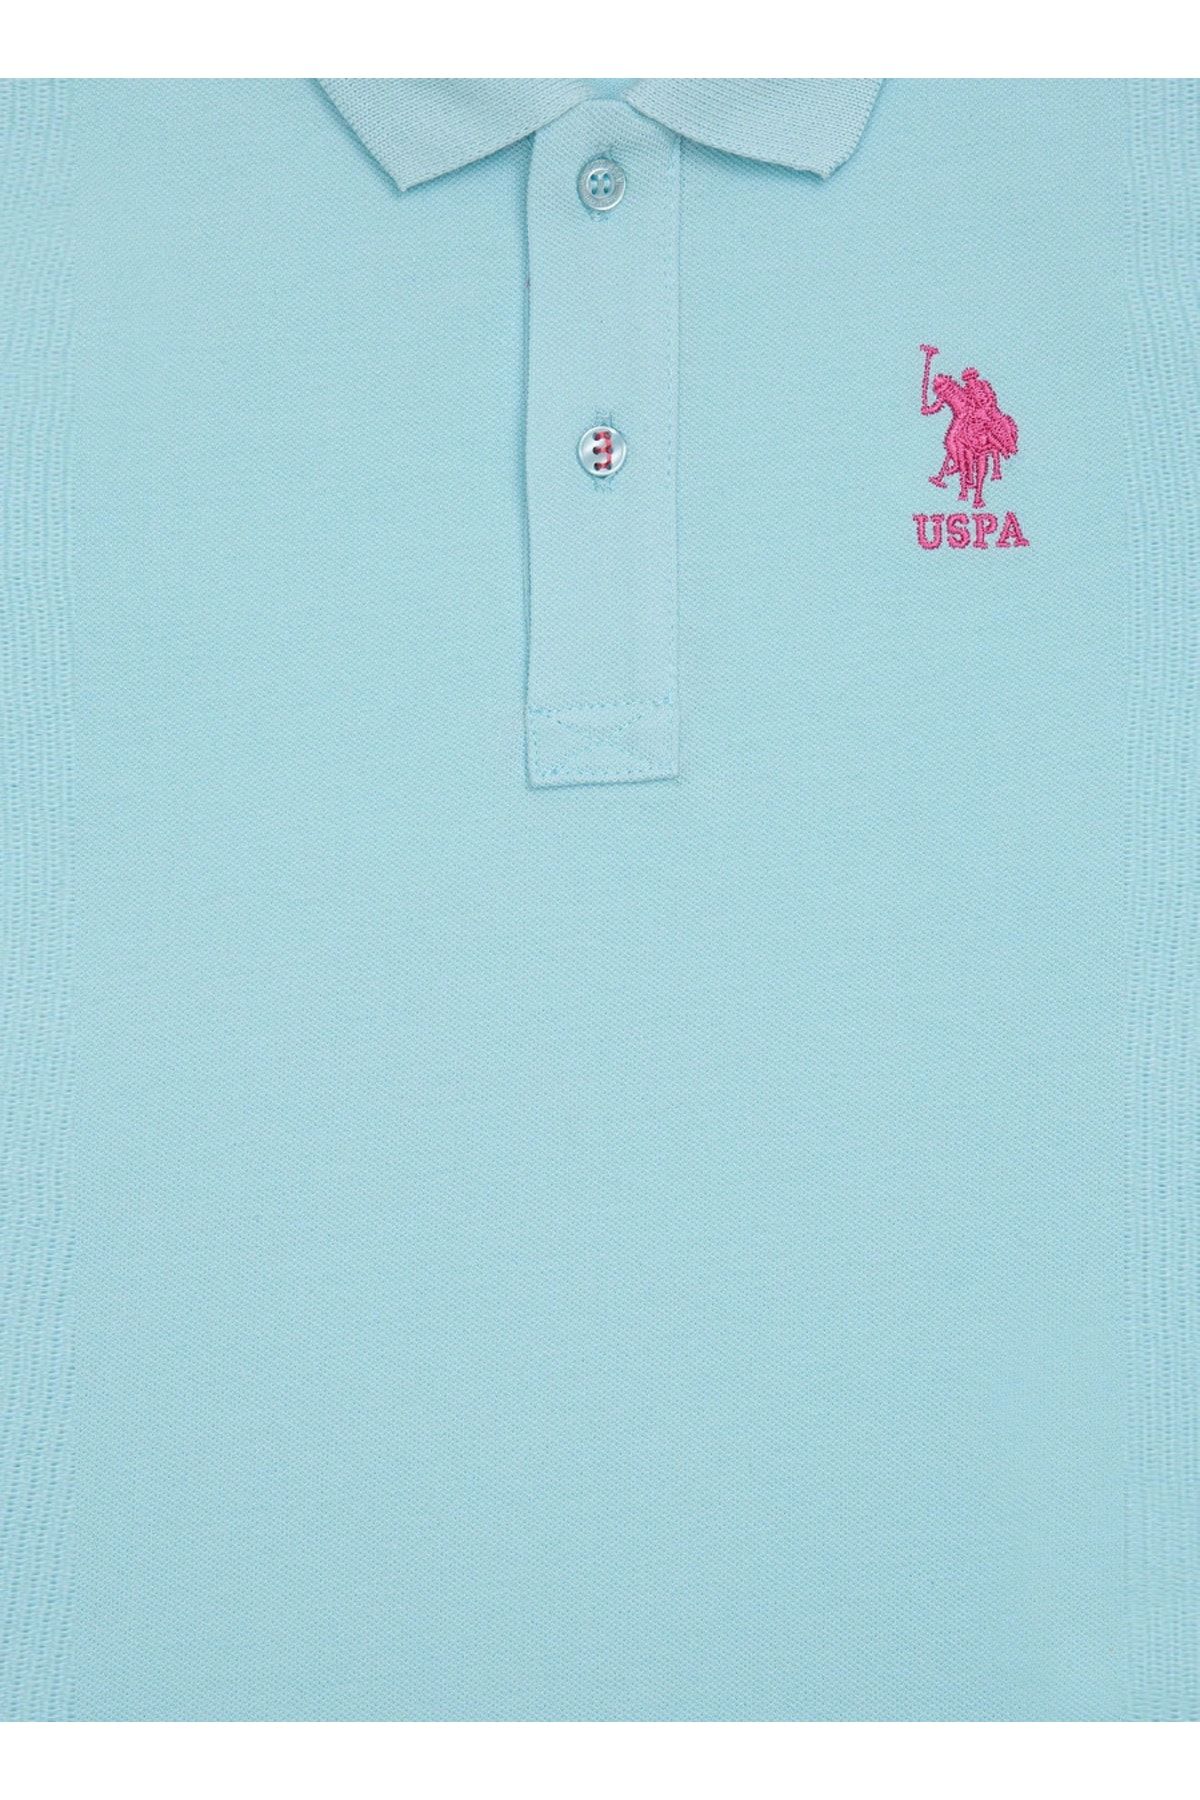 U.S. Polo Assn. تی شرت یقه پولو فیروزه ای پسرانه